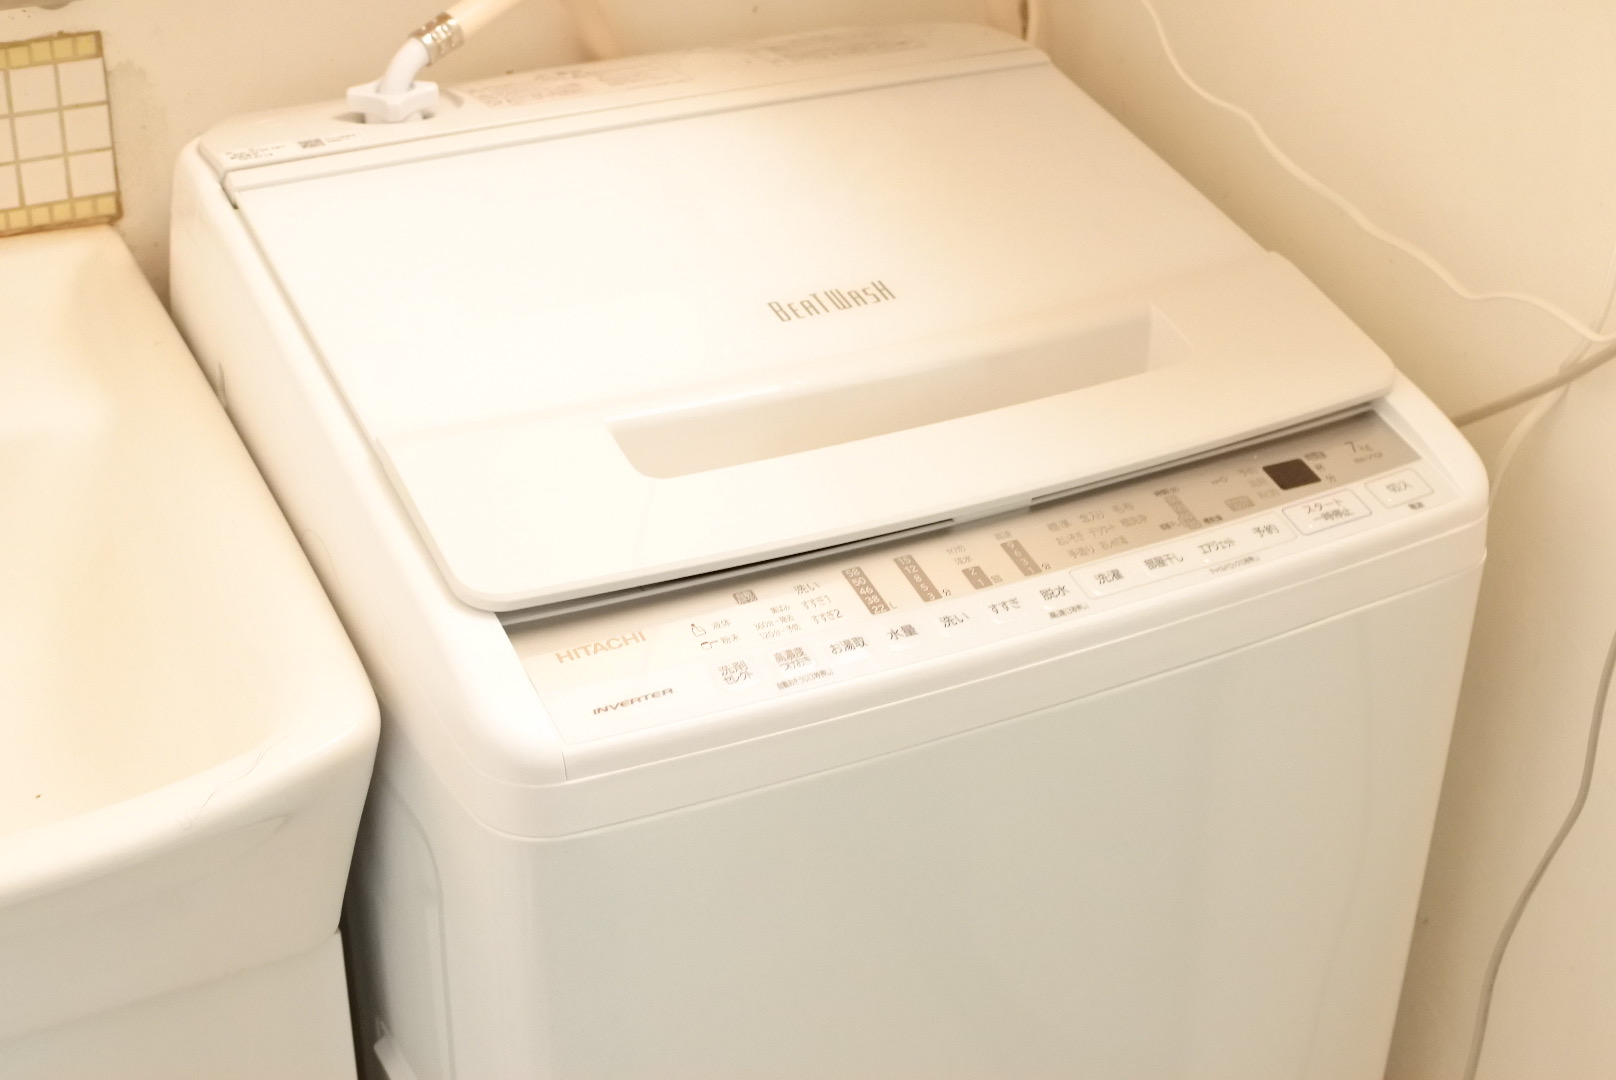 2016年式 7kg HITACHI洗濯機 BW-70WVE3ビートウォッシュ